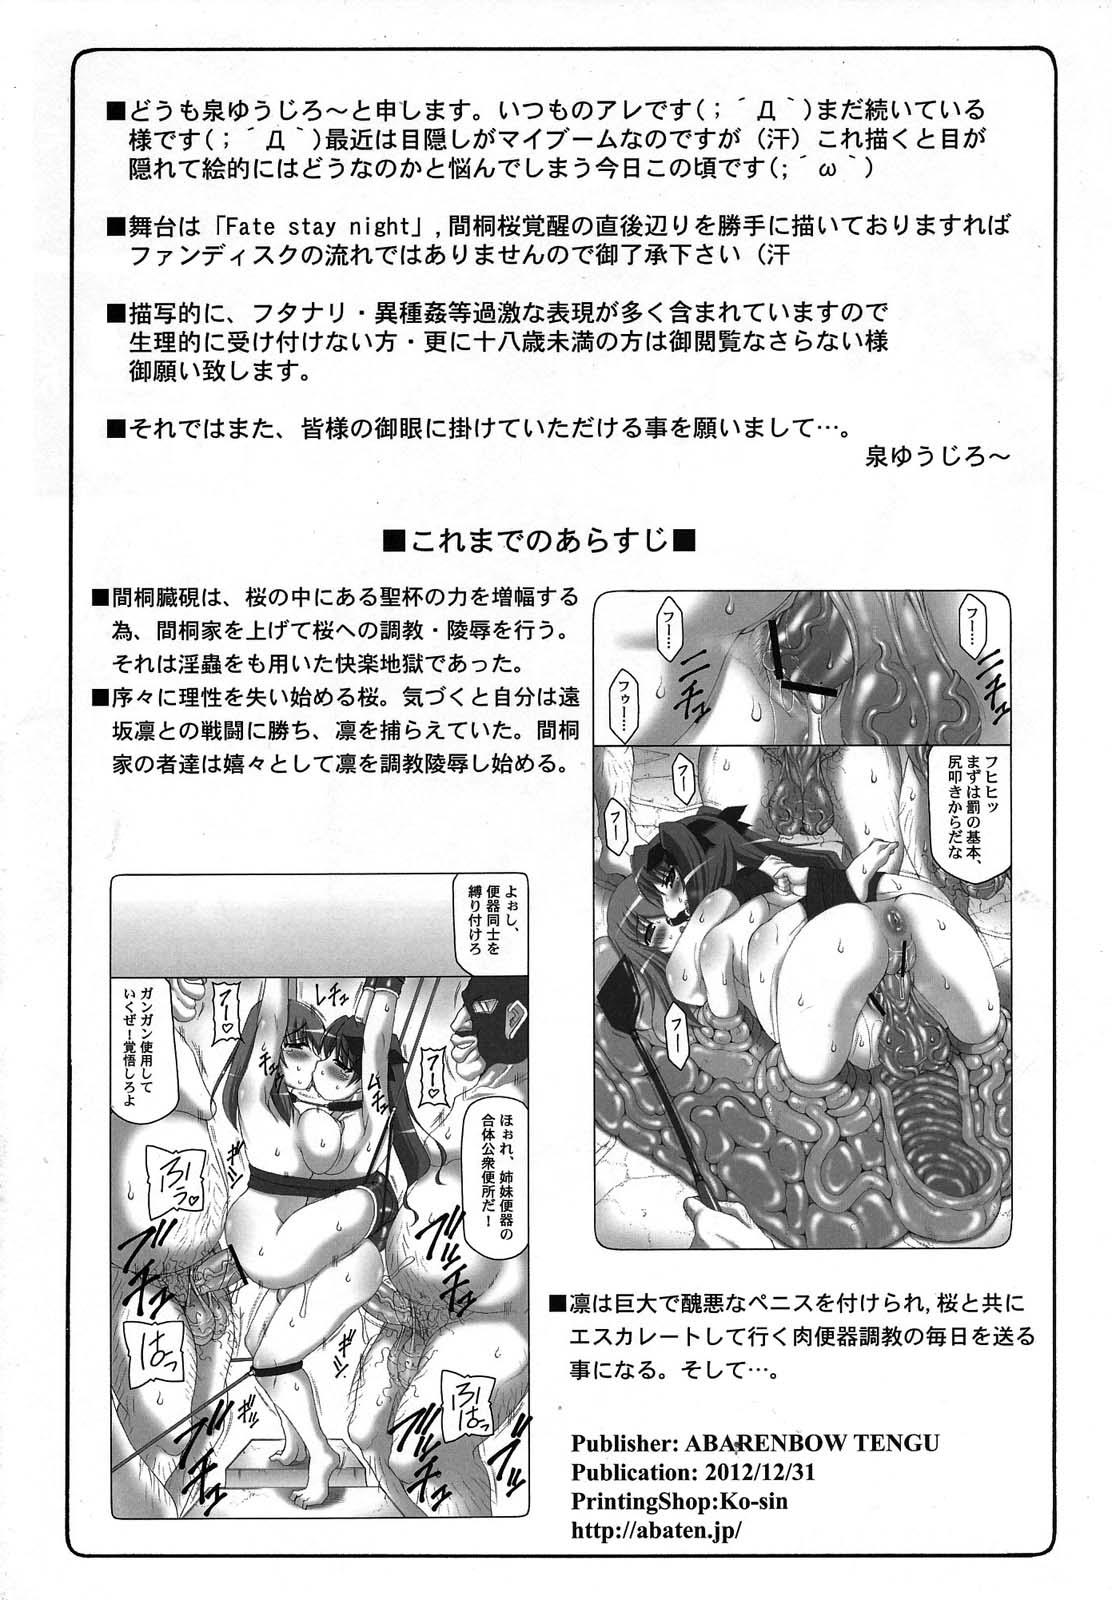 Inked Kotori 9 - Fate stay night Hymen - Page 3